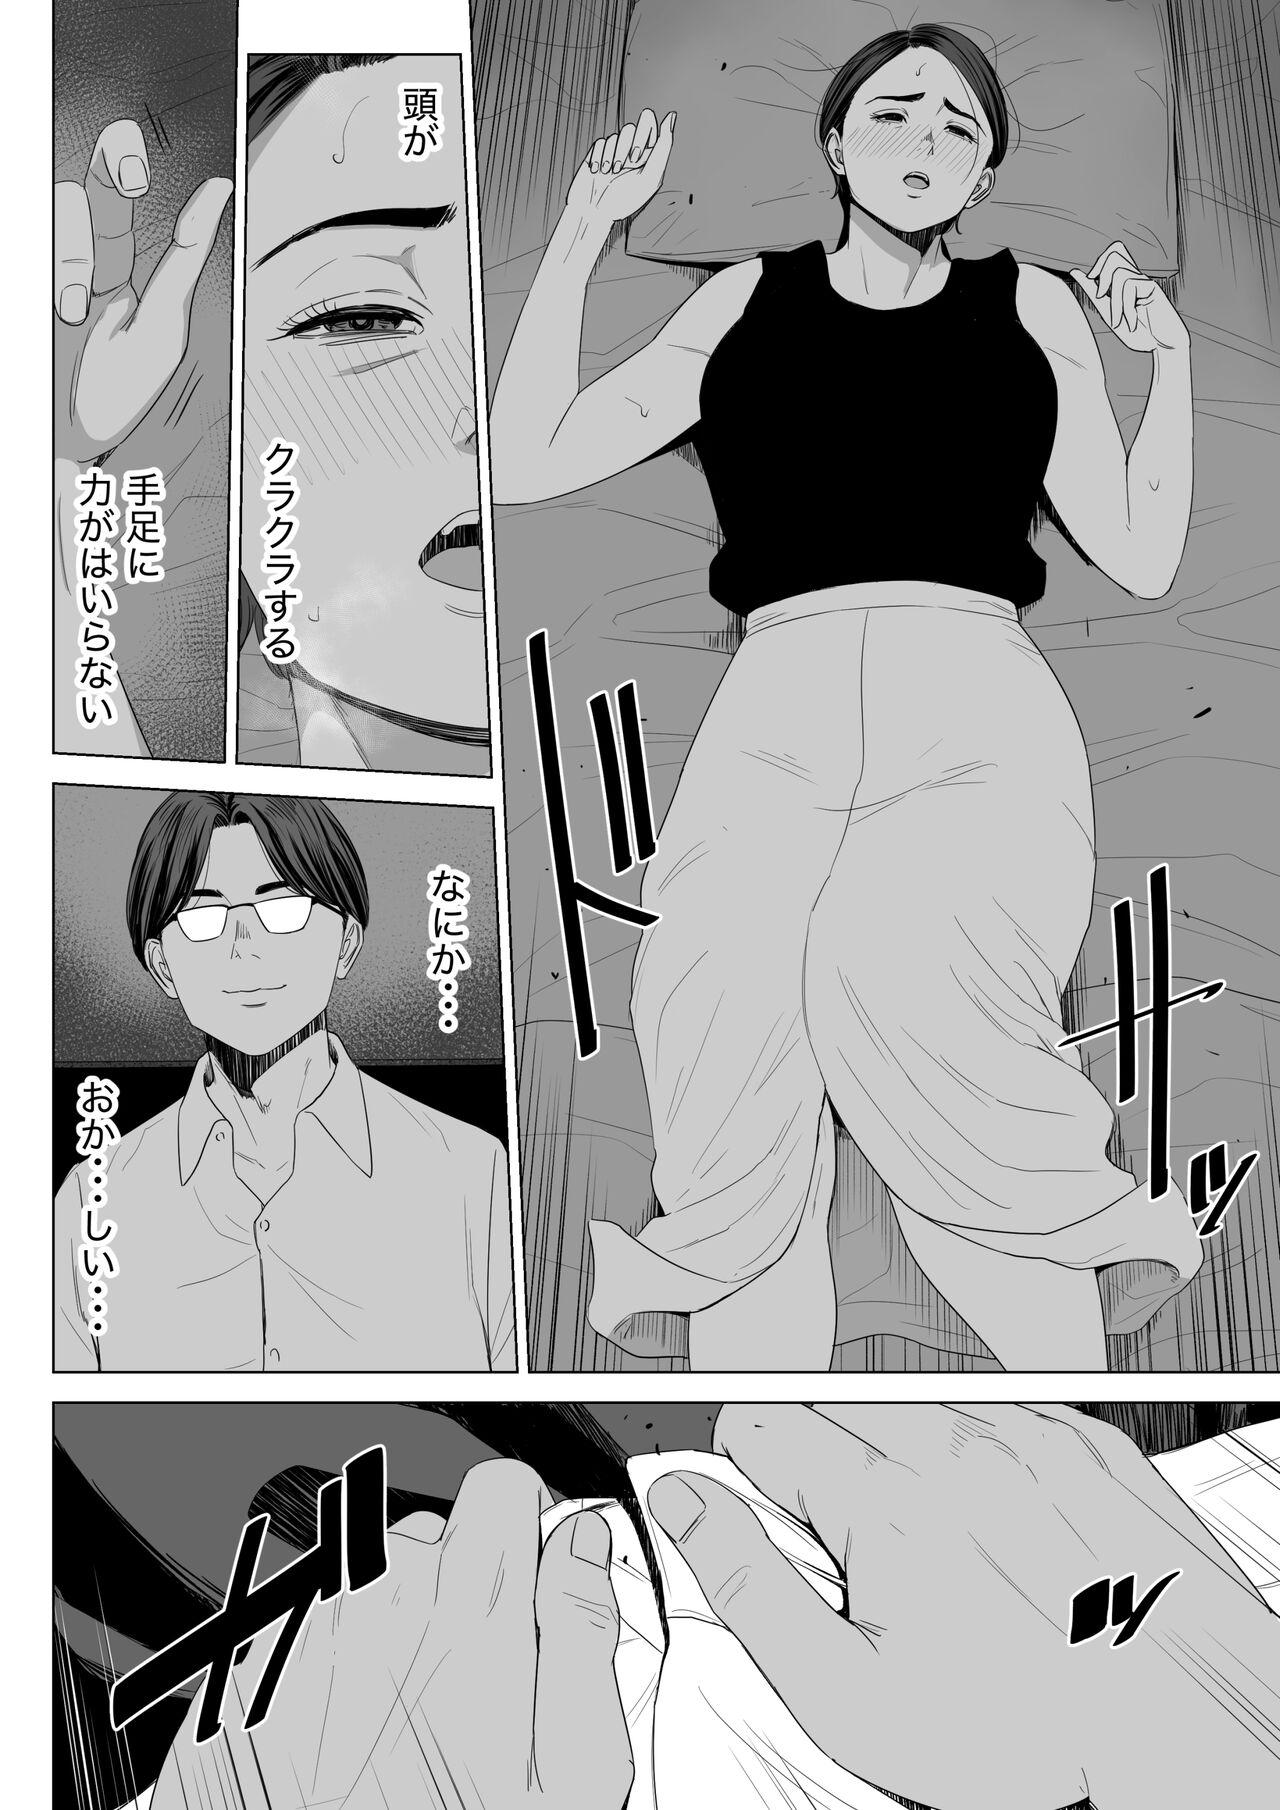 Friend Gibo no tsukaeru karada. - Original Fitness - Page 11